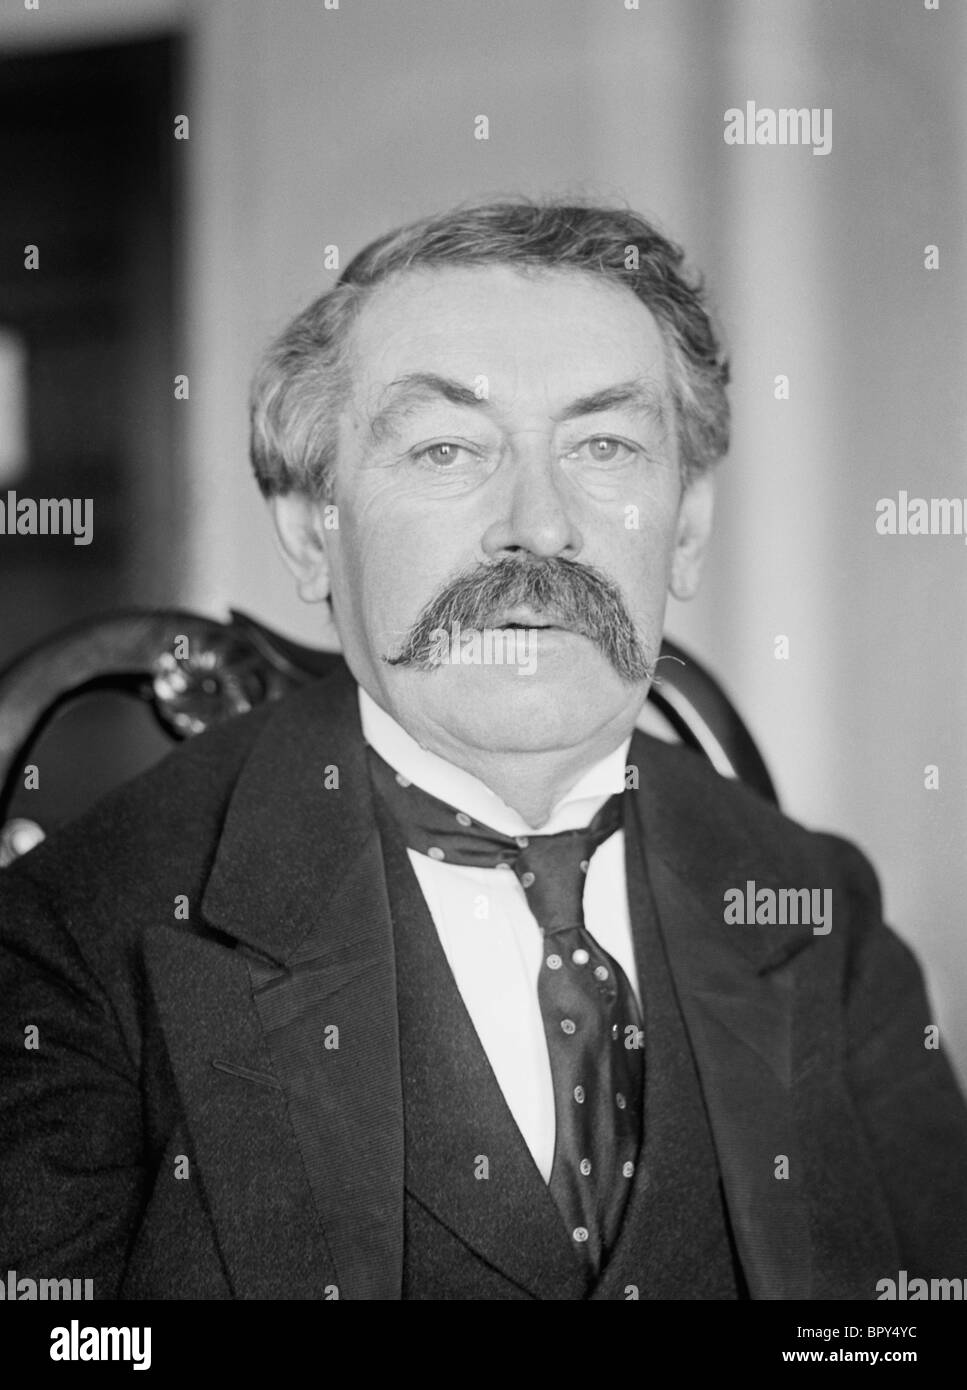 Porträt-Foto-c1921 von Aristide Briand (1862-1932) - Premierminister von Frankreich mehrmals zwischen 1909 + 1929. Stockfoto